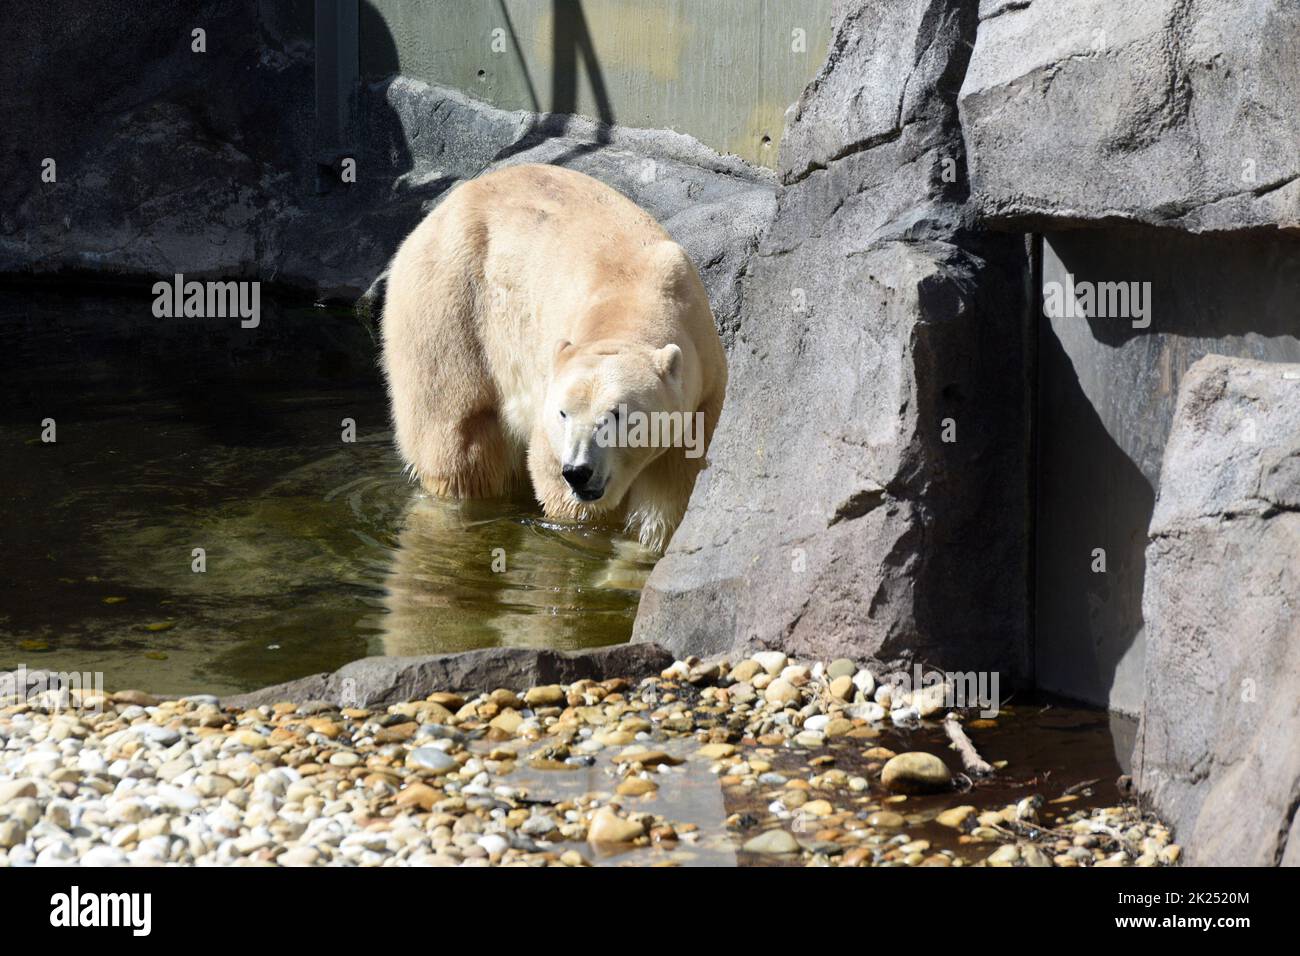 Eisbär im Zoo Schönbrunn in Wien, Österreich, Europa - Ice bear in Schönbrunn Zoo in Vienna, Austria, Europe Stock Photo